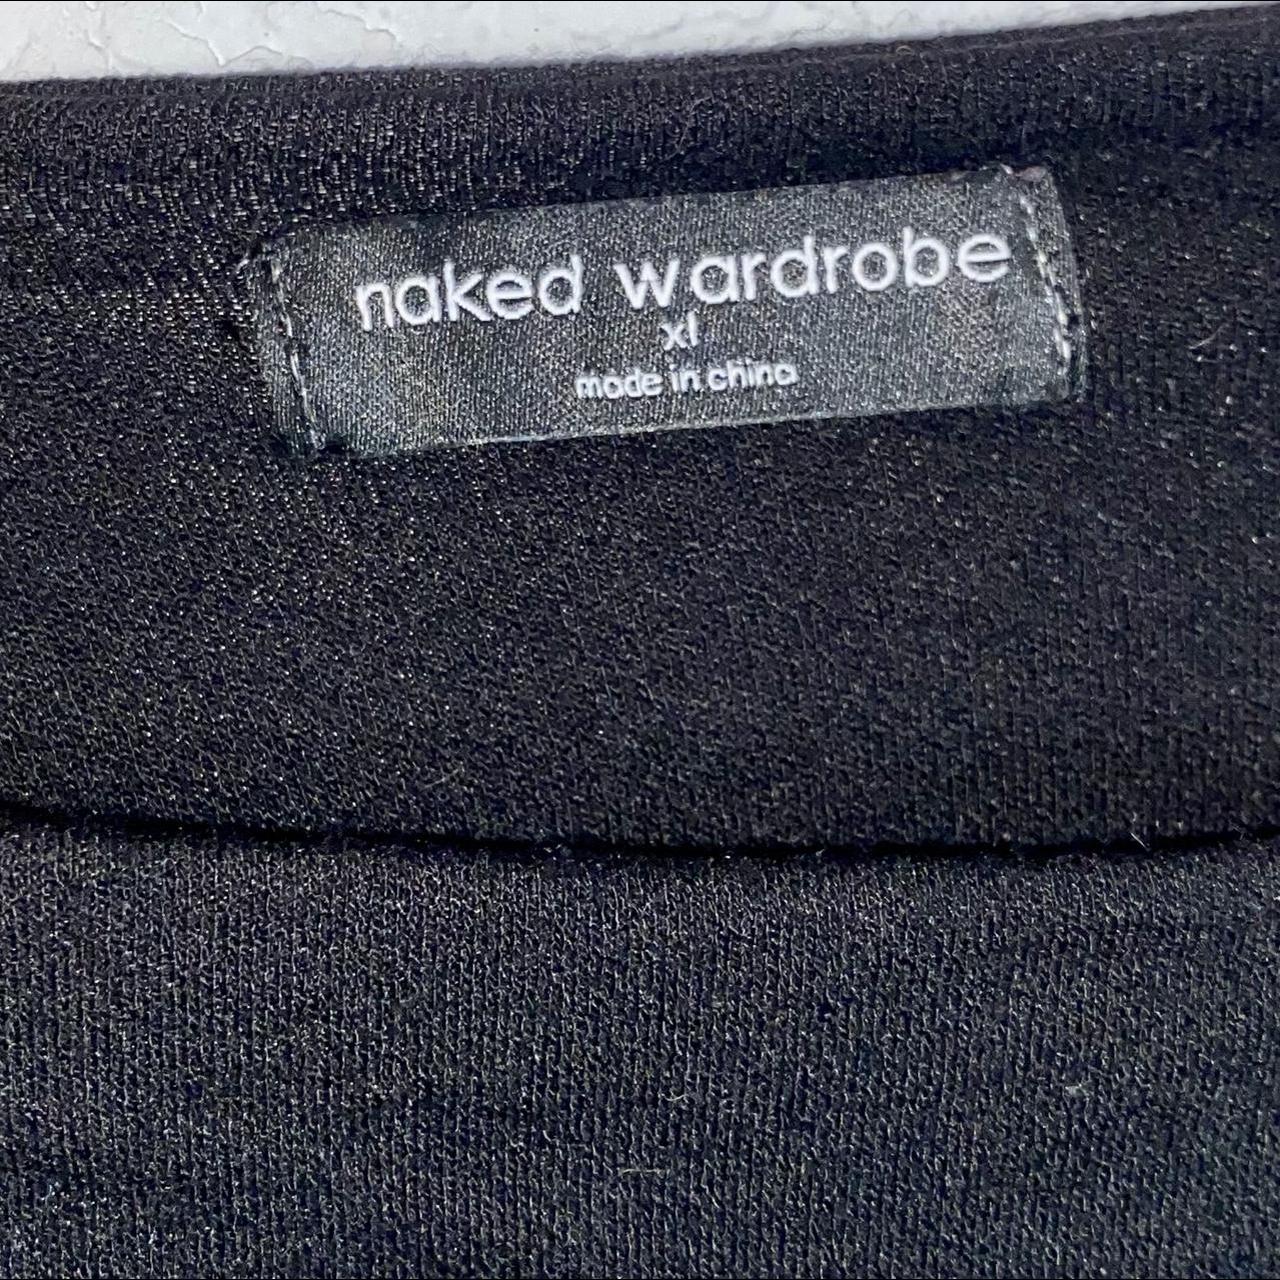 Product Image 4 - Naked wardrobe black sheer paneled